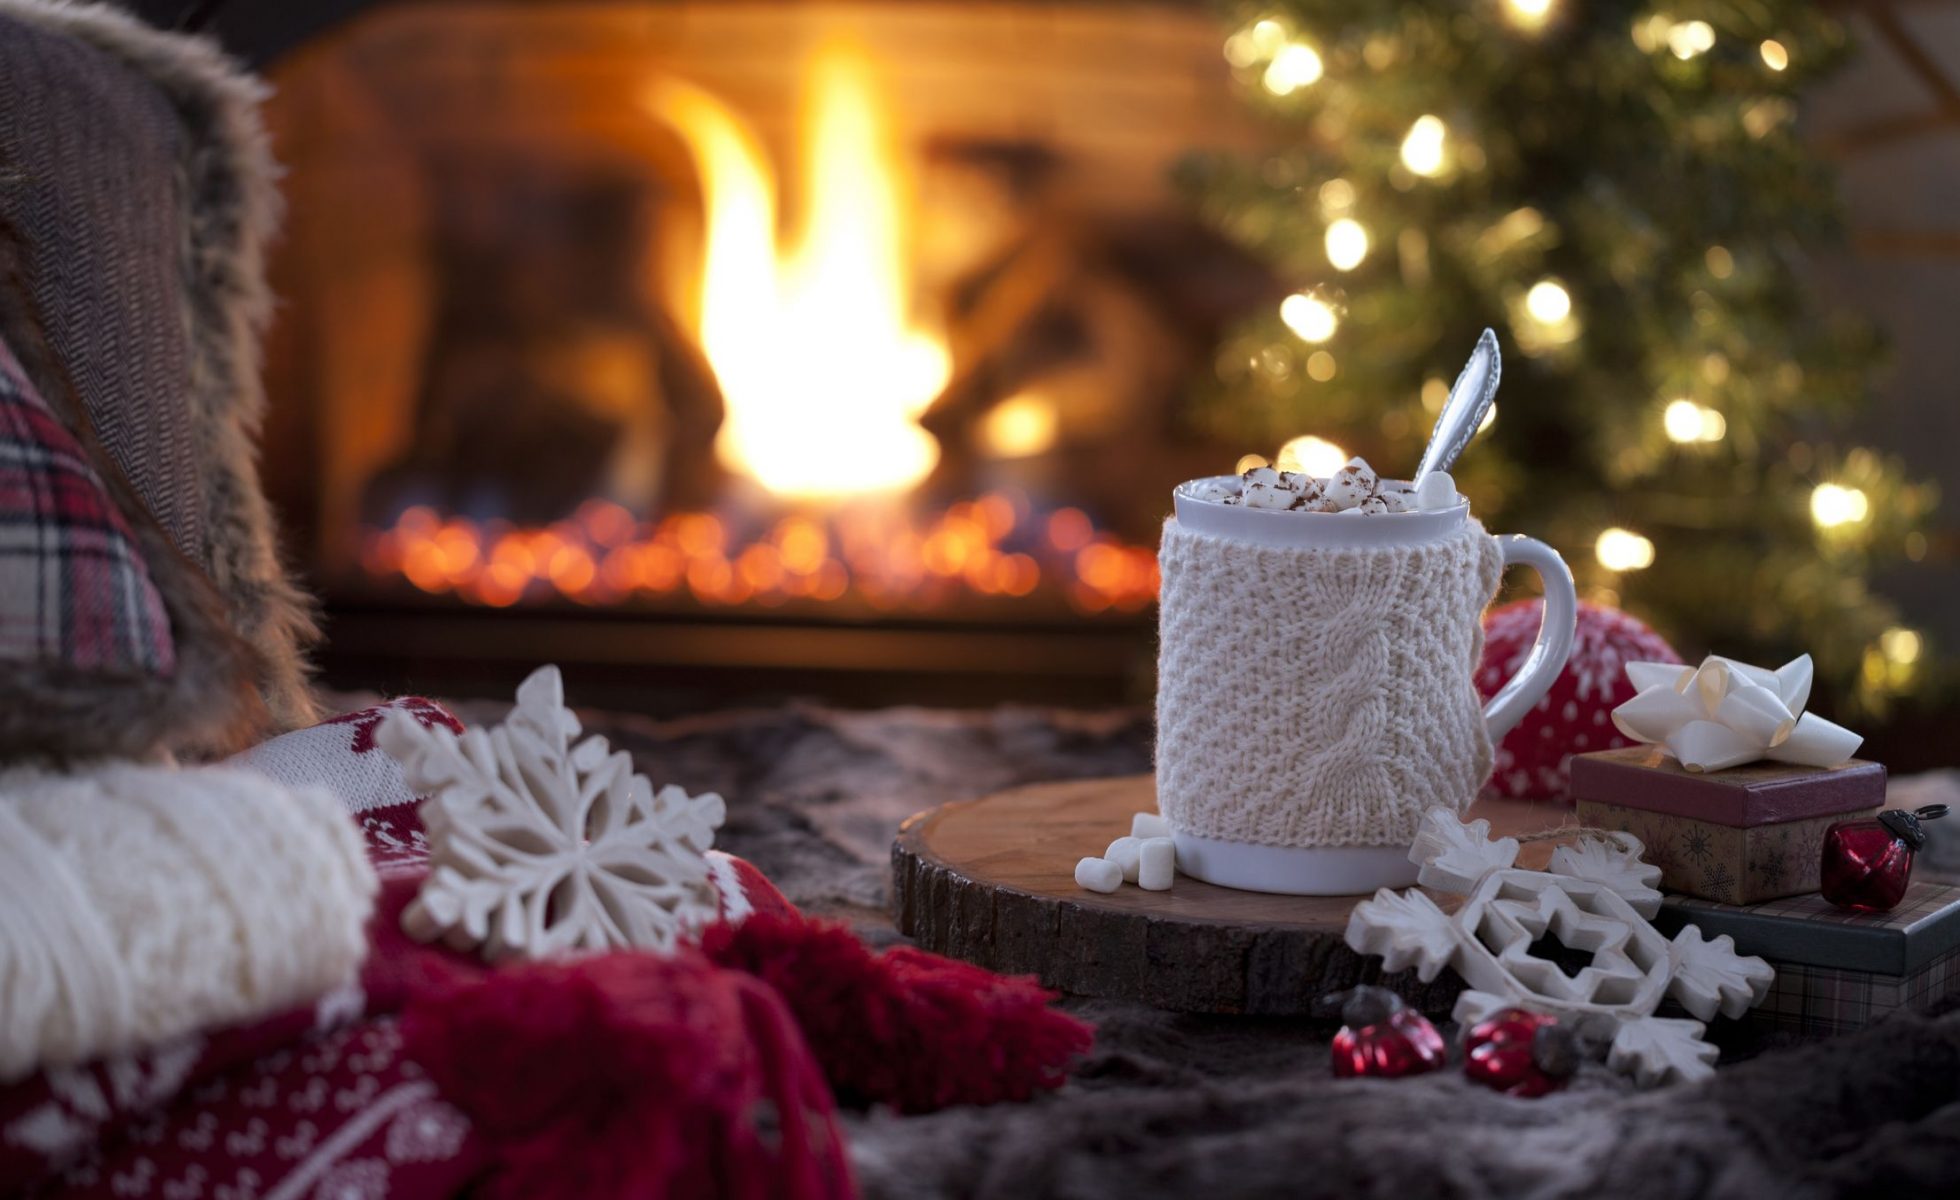 Χριστούγεννα μυρίζει: Πώς εξηγείται επιστημονικά η σύνδεση τους με τις μυρωδιές